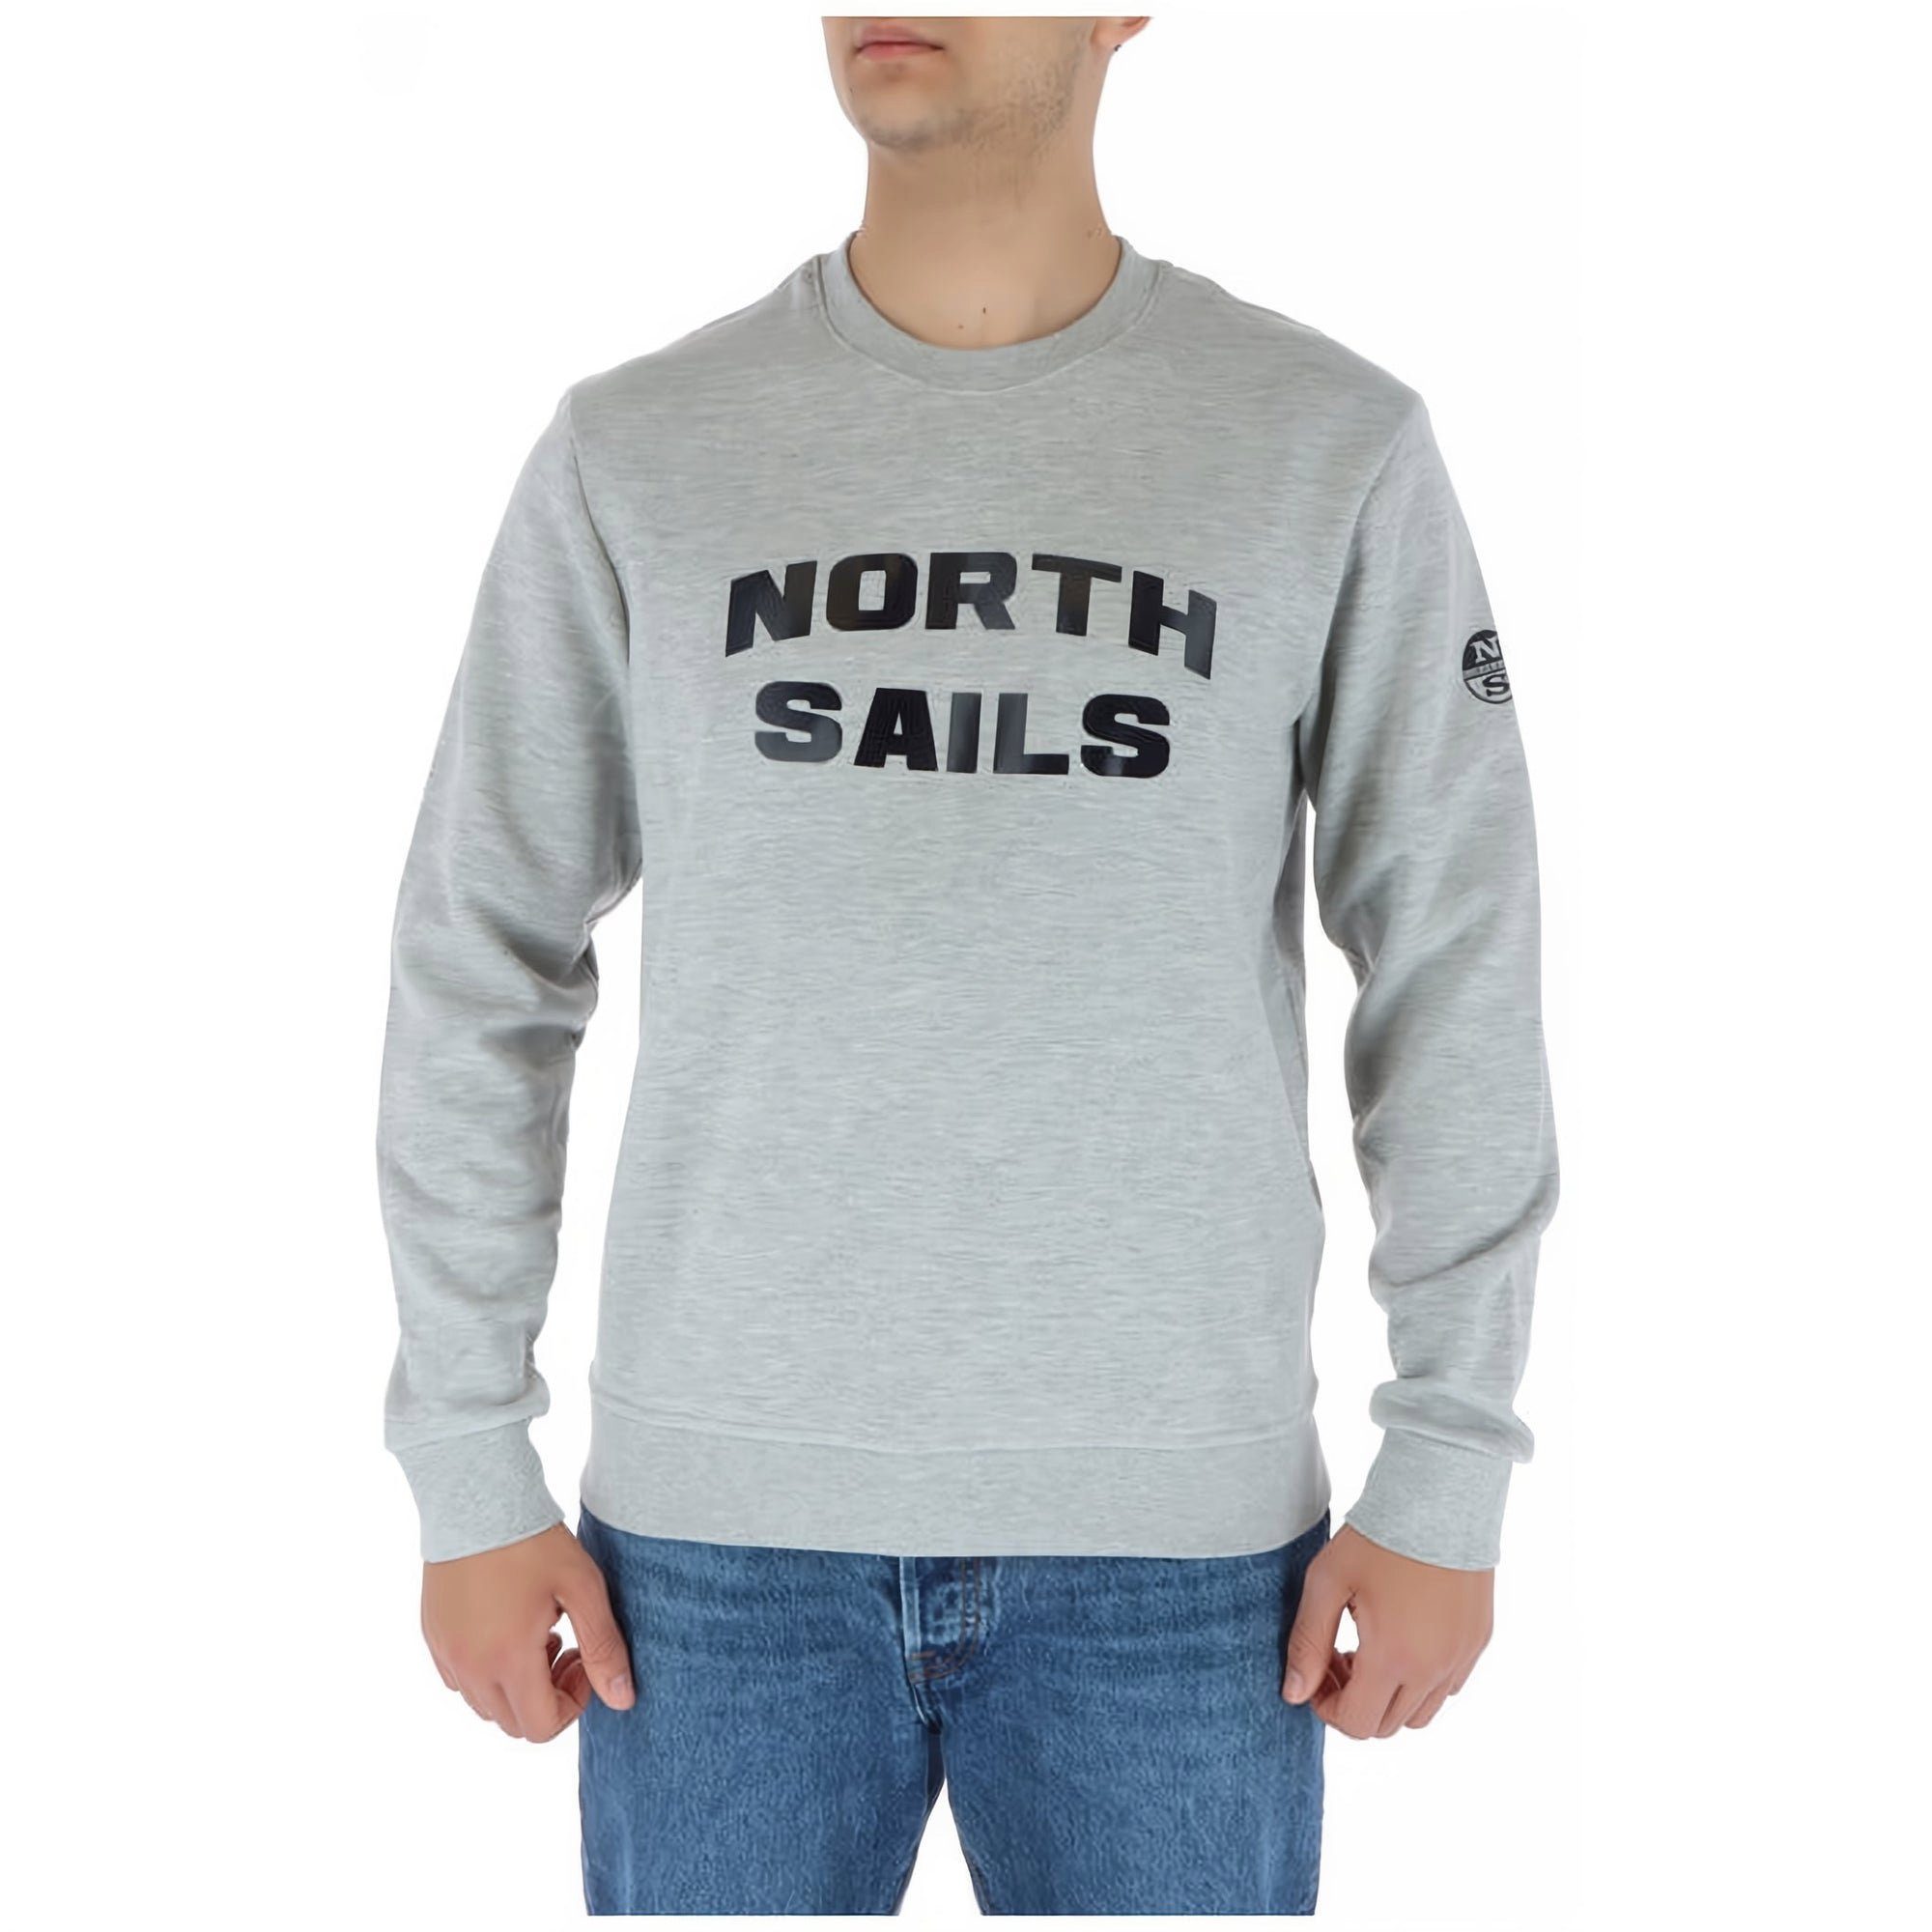 bestellen, Komfort Sails North Sails Sweatshirt Jetzt den Sweatshirt Herren genießen! von, und North modische